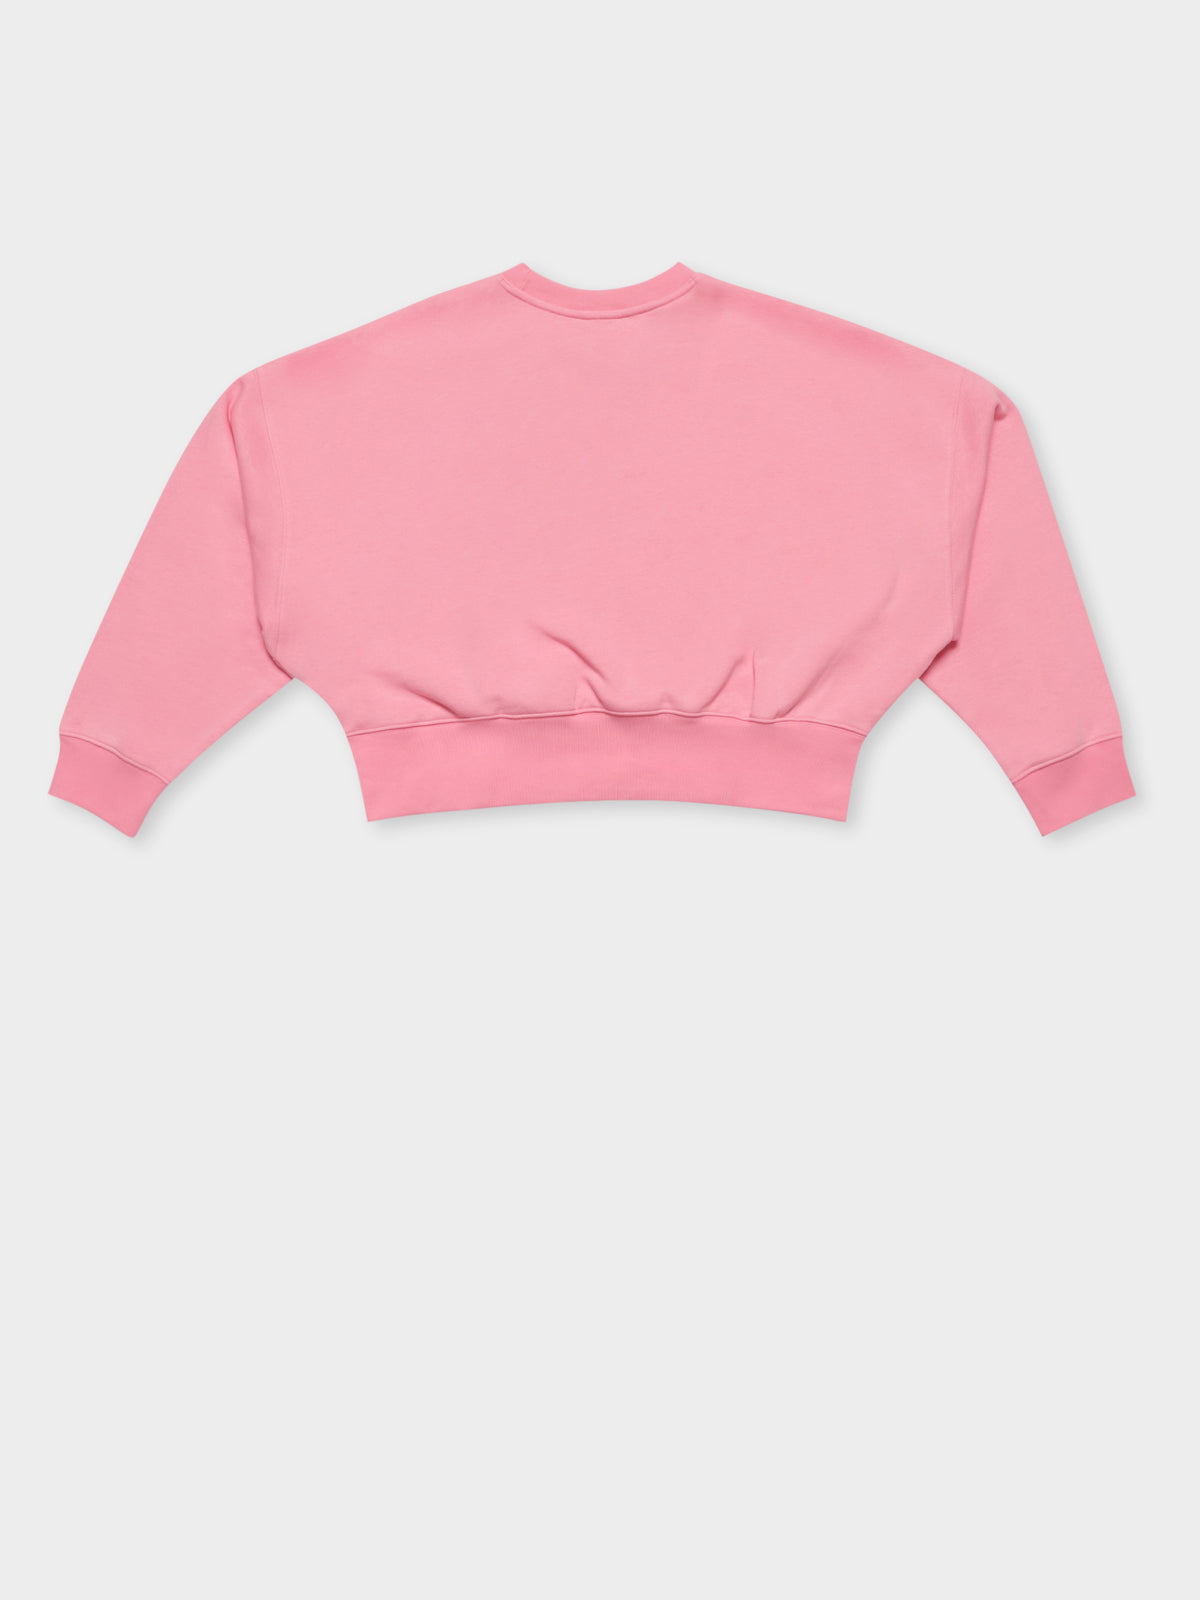 Adicolor Essentials Fleece Sweatshirt in Bliss Pink